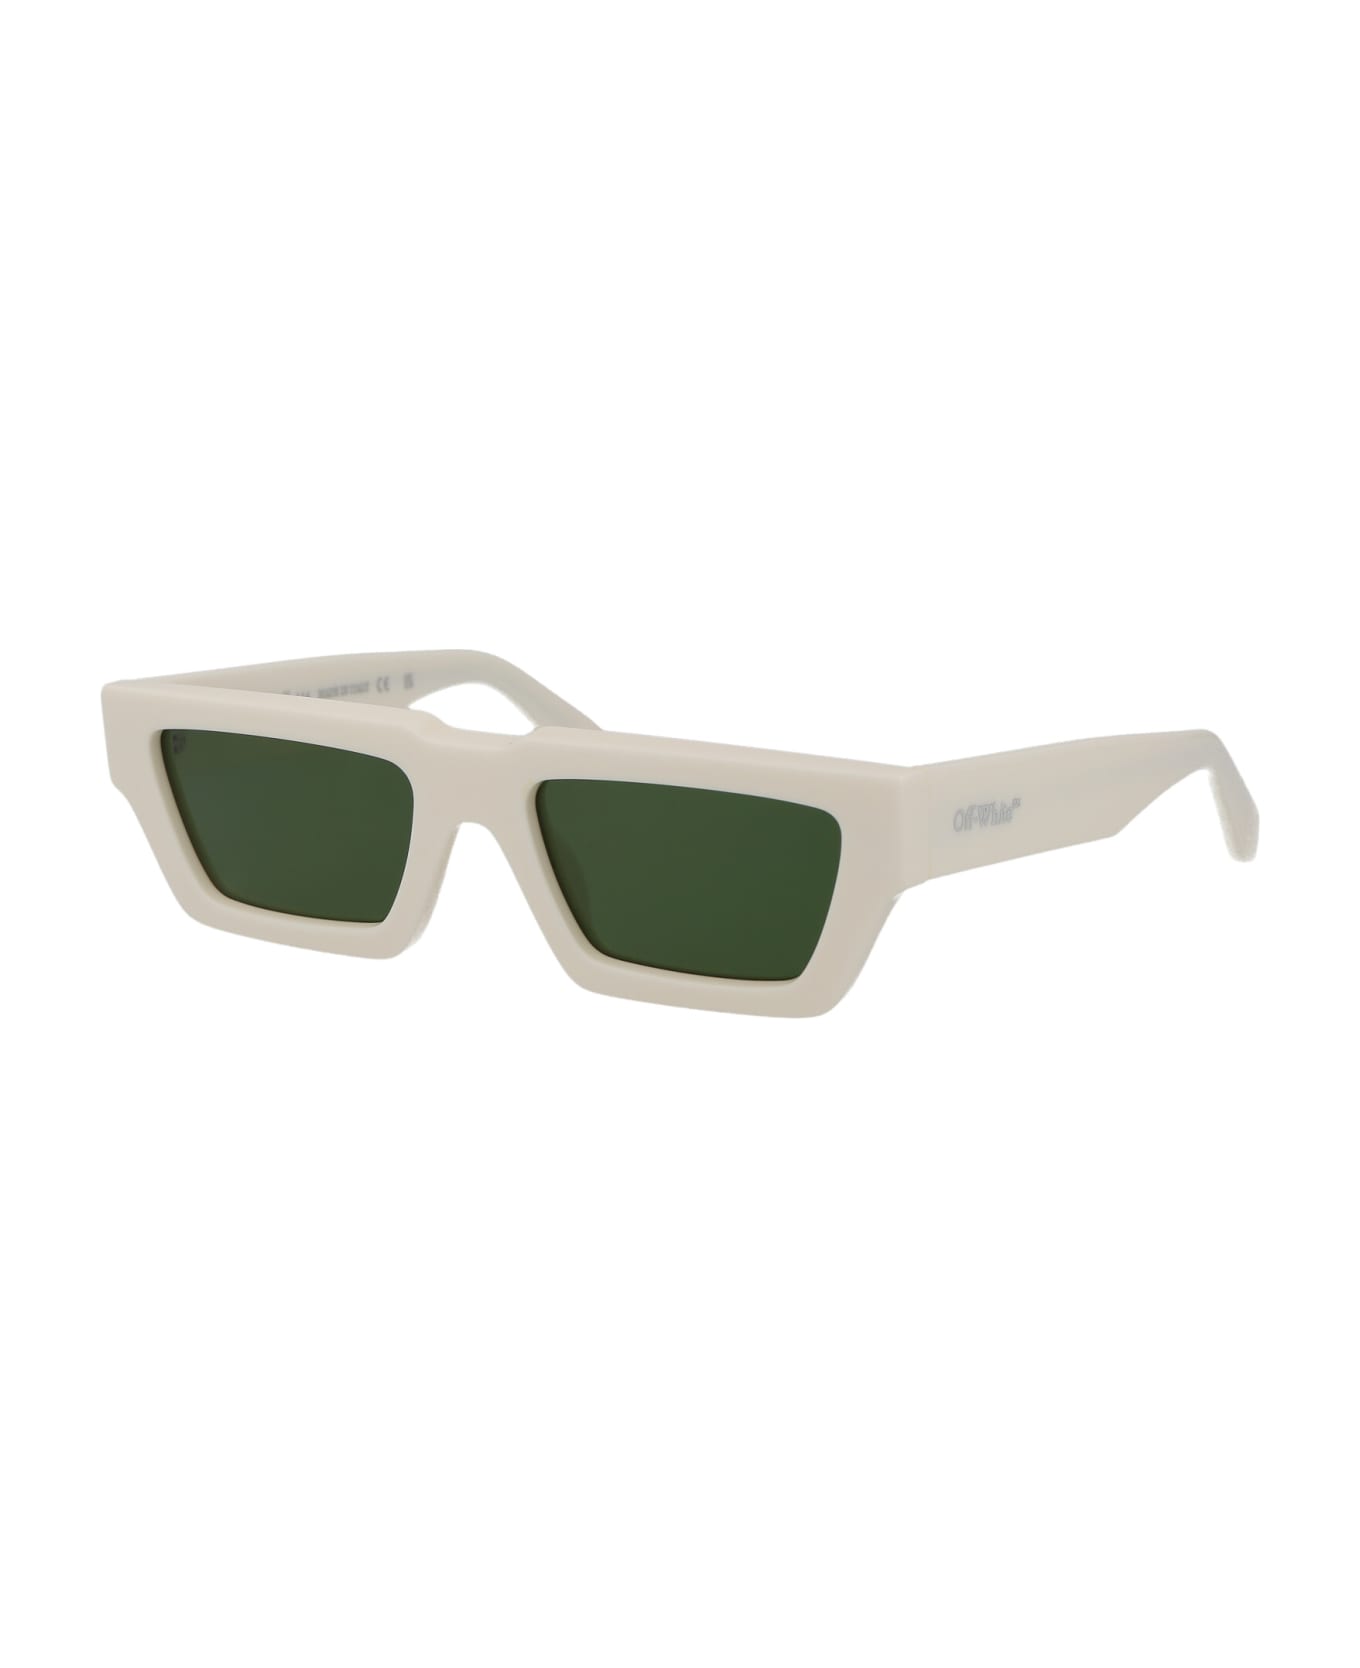 Off-White Manchester Sunglasses - 0155 WHITE